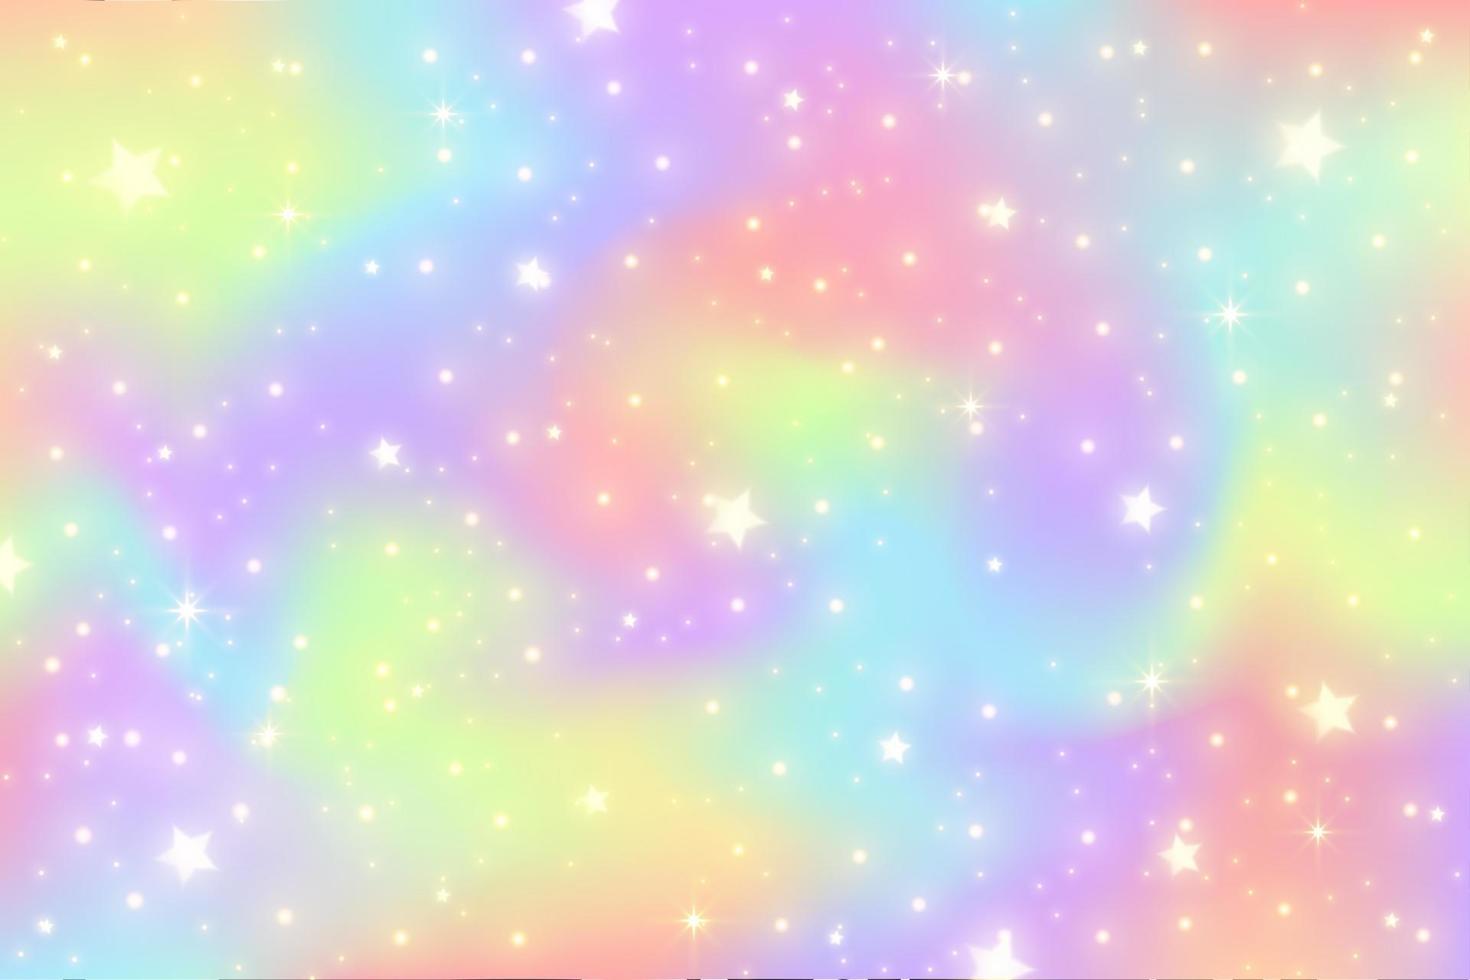 Regenbogen-Einhorn-Hintergrund. Girlie-Prinzessin-Himmel mit Sternen und Glitzern. Gradient holographische Fantasy-Kulisse. Vektor abstrakte schillernde Textur.